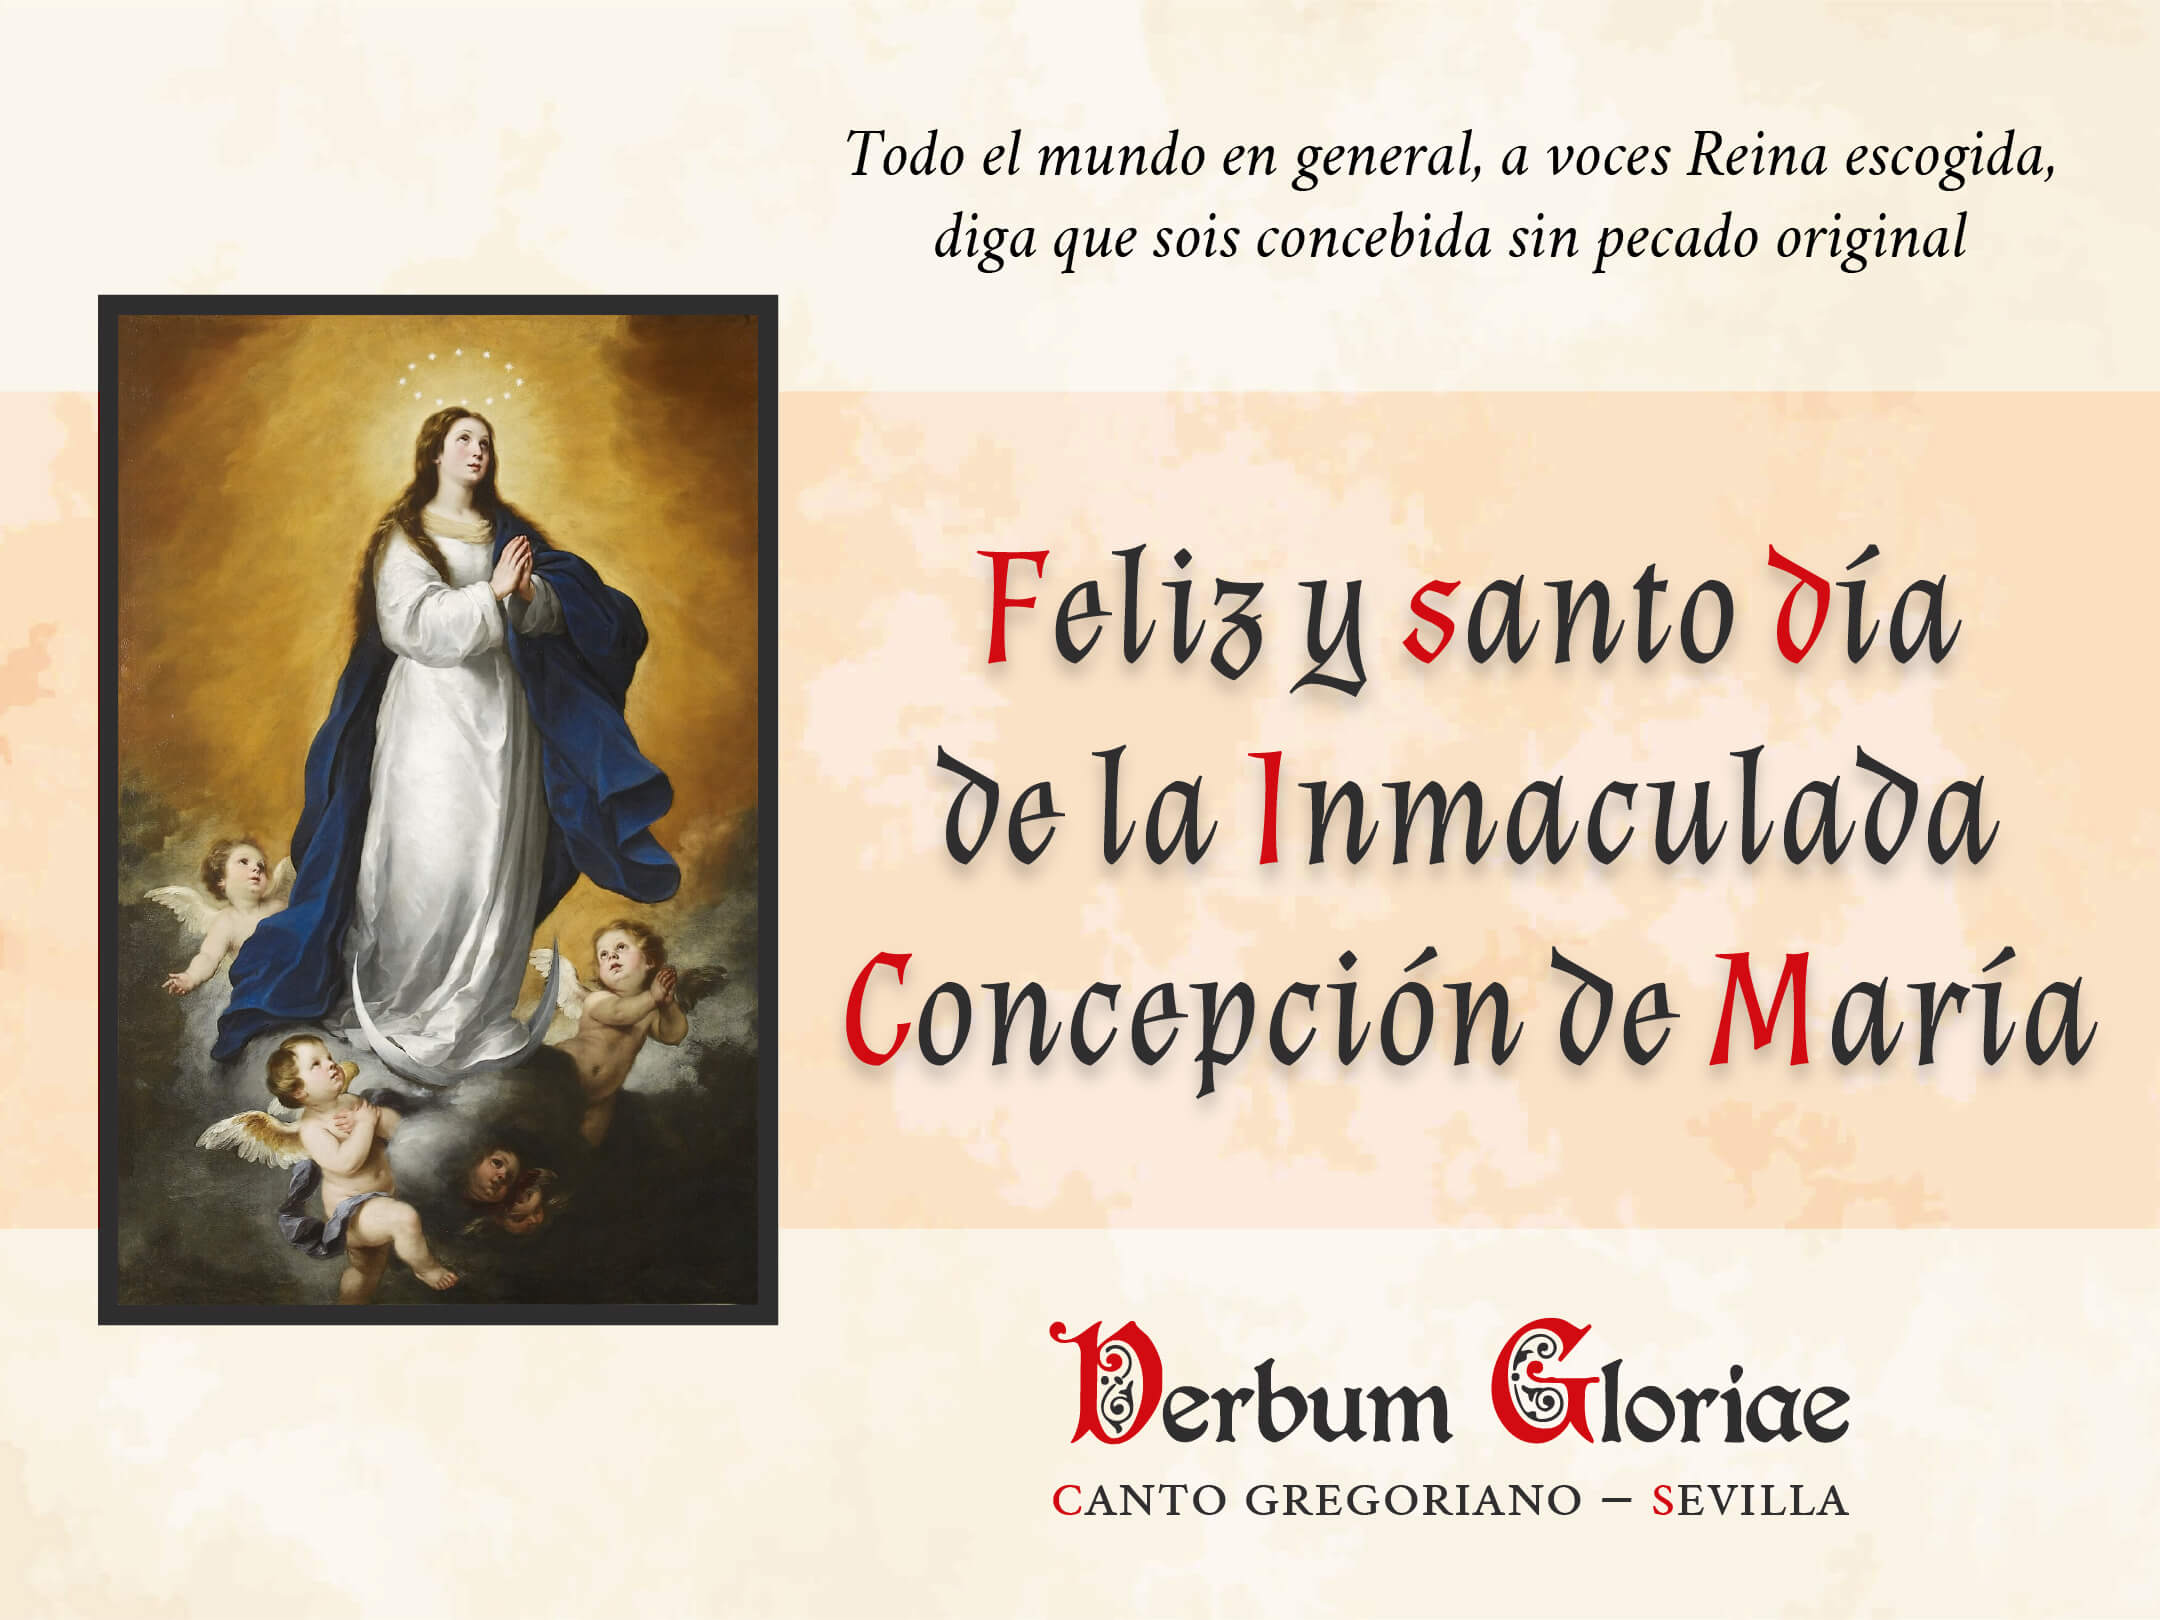 Felicitación de la Inmaculada Concepción 2022.